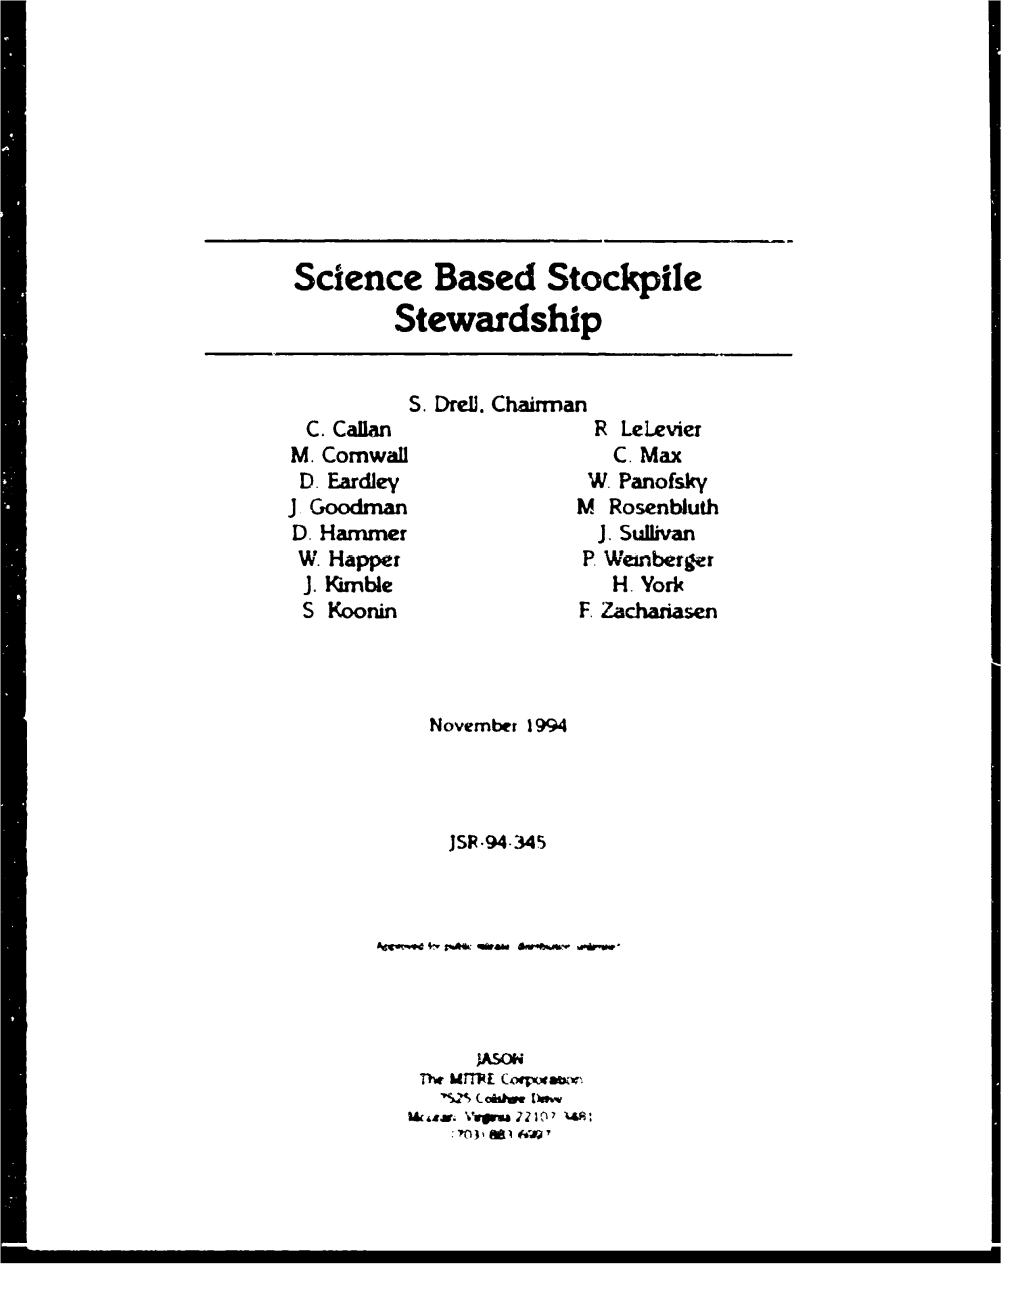 Science Based Stockpile Stewardship